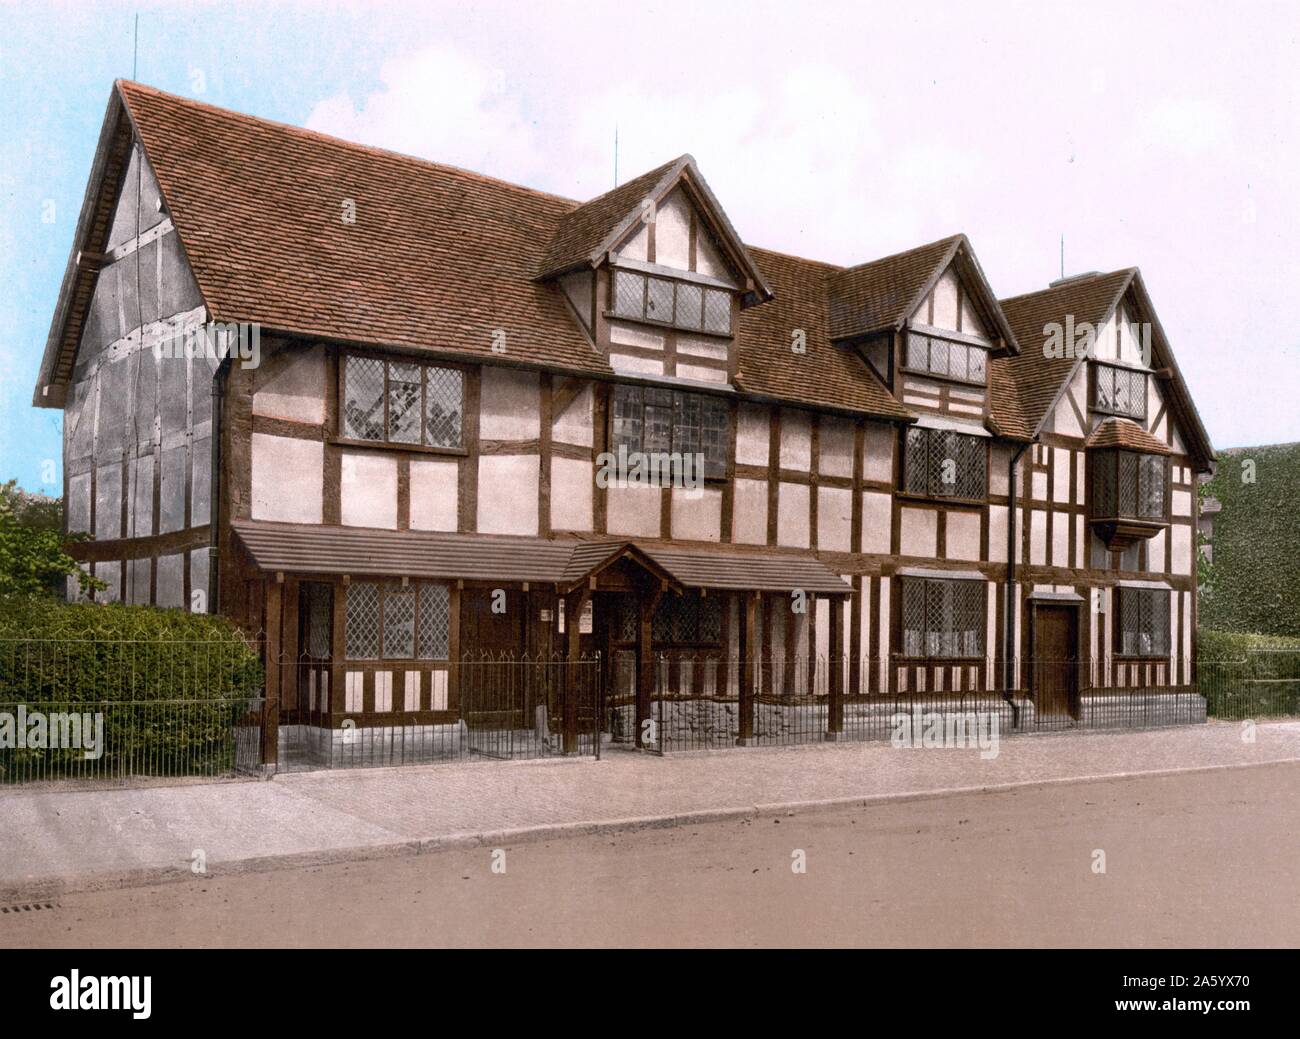 Shakespeares Geburtsort Stratford, England. Shakespeares Geburtshaus ist eine restaurierte aus dem 16. Jahrhundert Fachwerkhaus befindet sich in Henley Street, Stratford-upon-Avon, Warwickshire, England, wo es geglaubt wird, dass William Shakespeare 1564 geboren wurde und seine Kindheit verbrachte Stockfoto